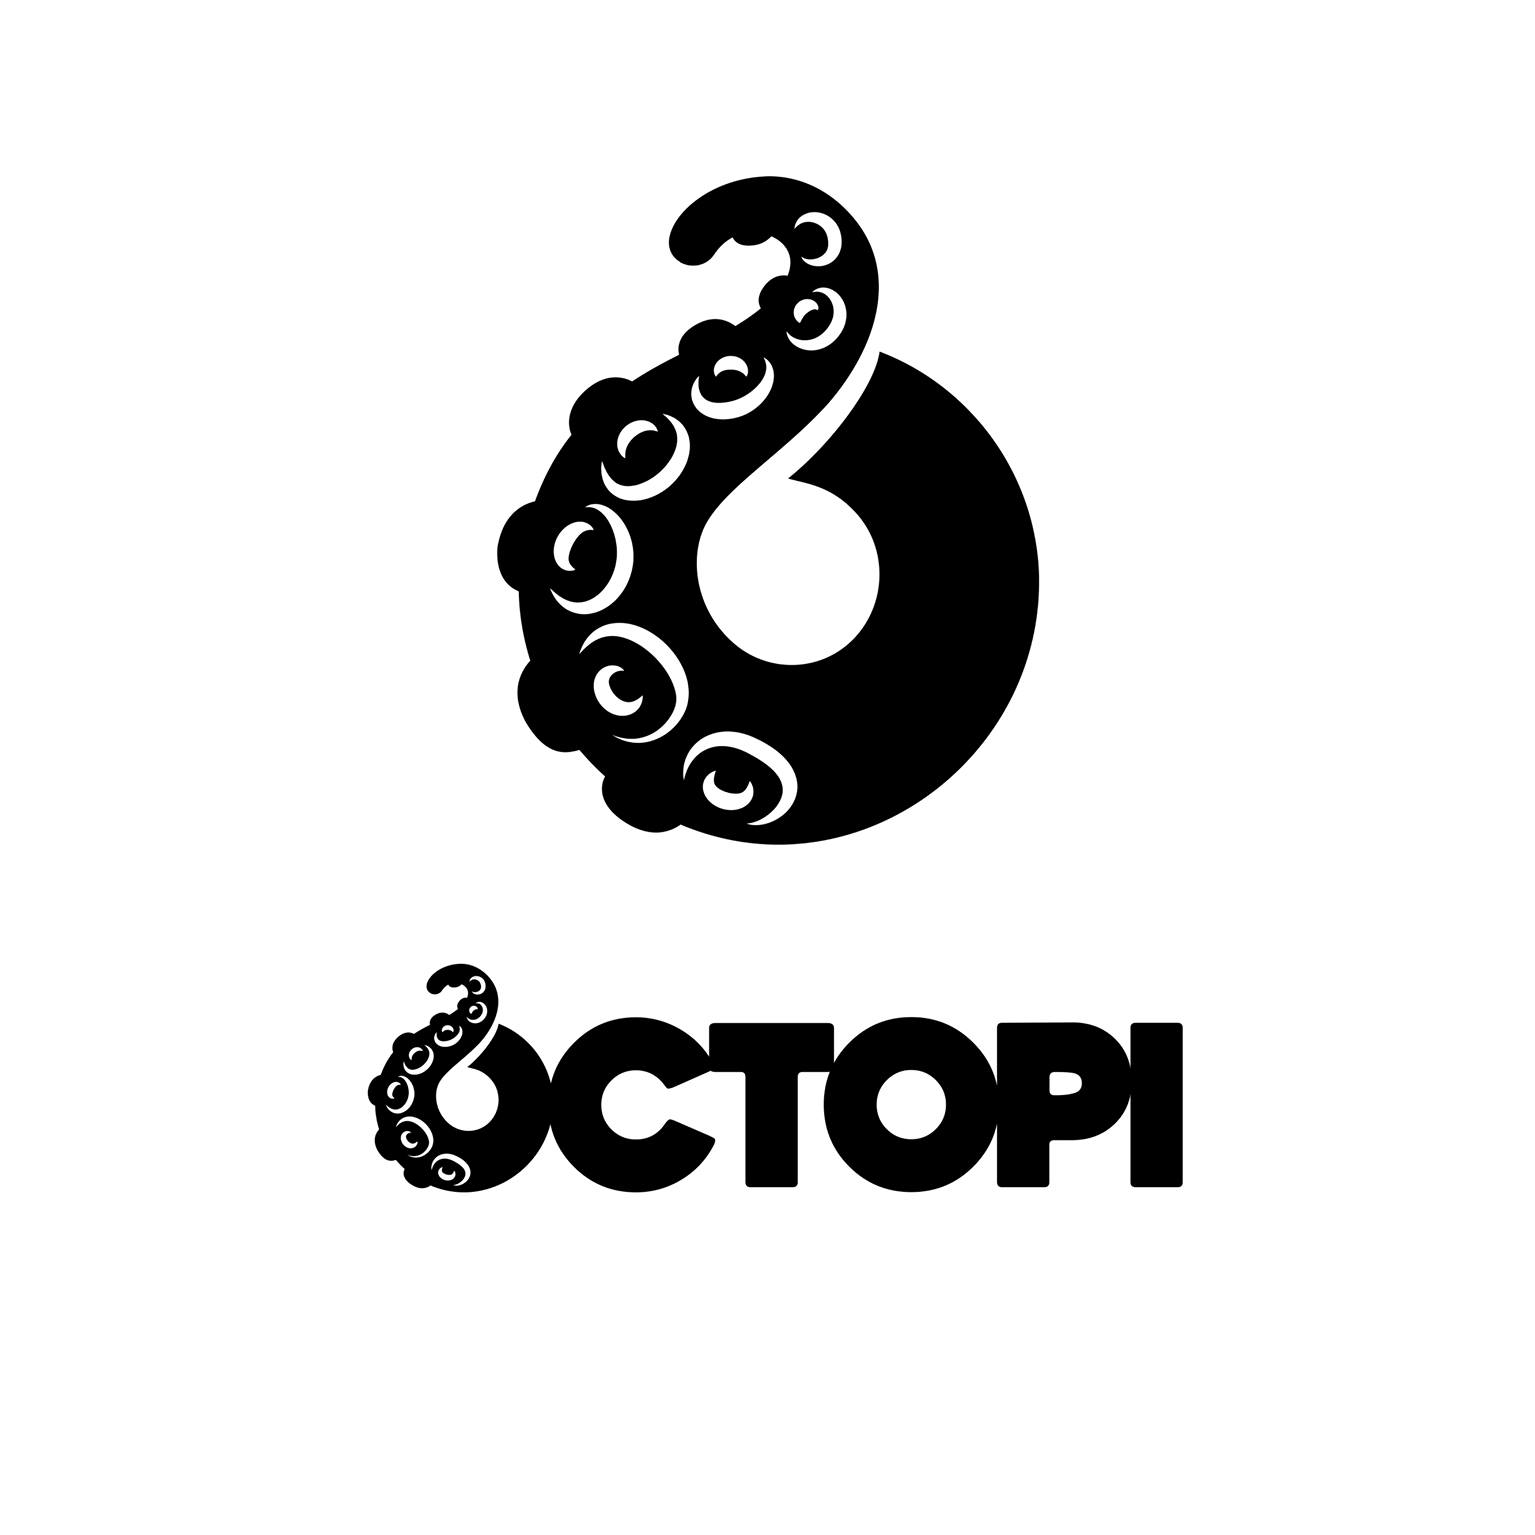 Octopi Brewing